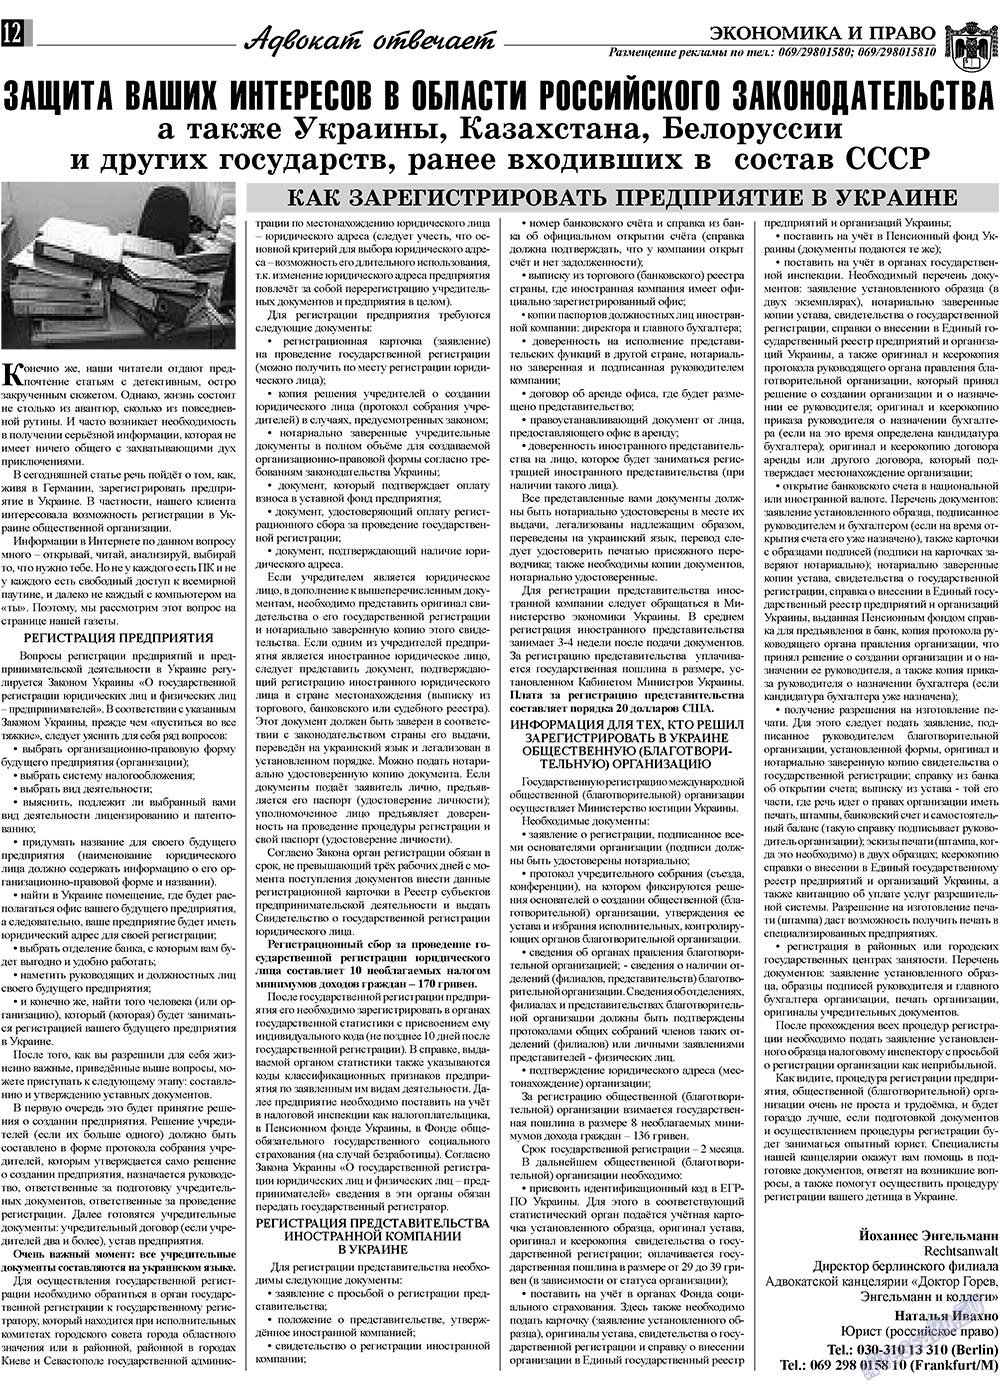 Экономика и право, газета. 2009 №12 стр.12